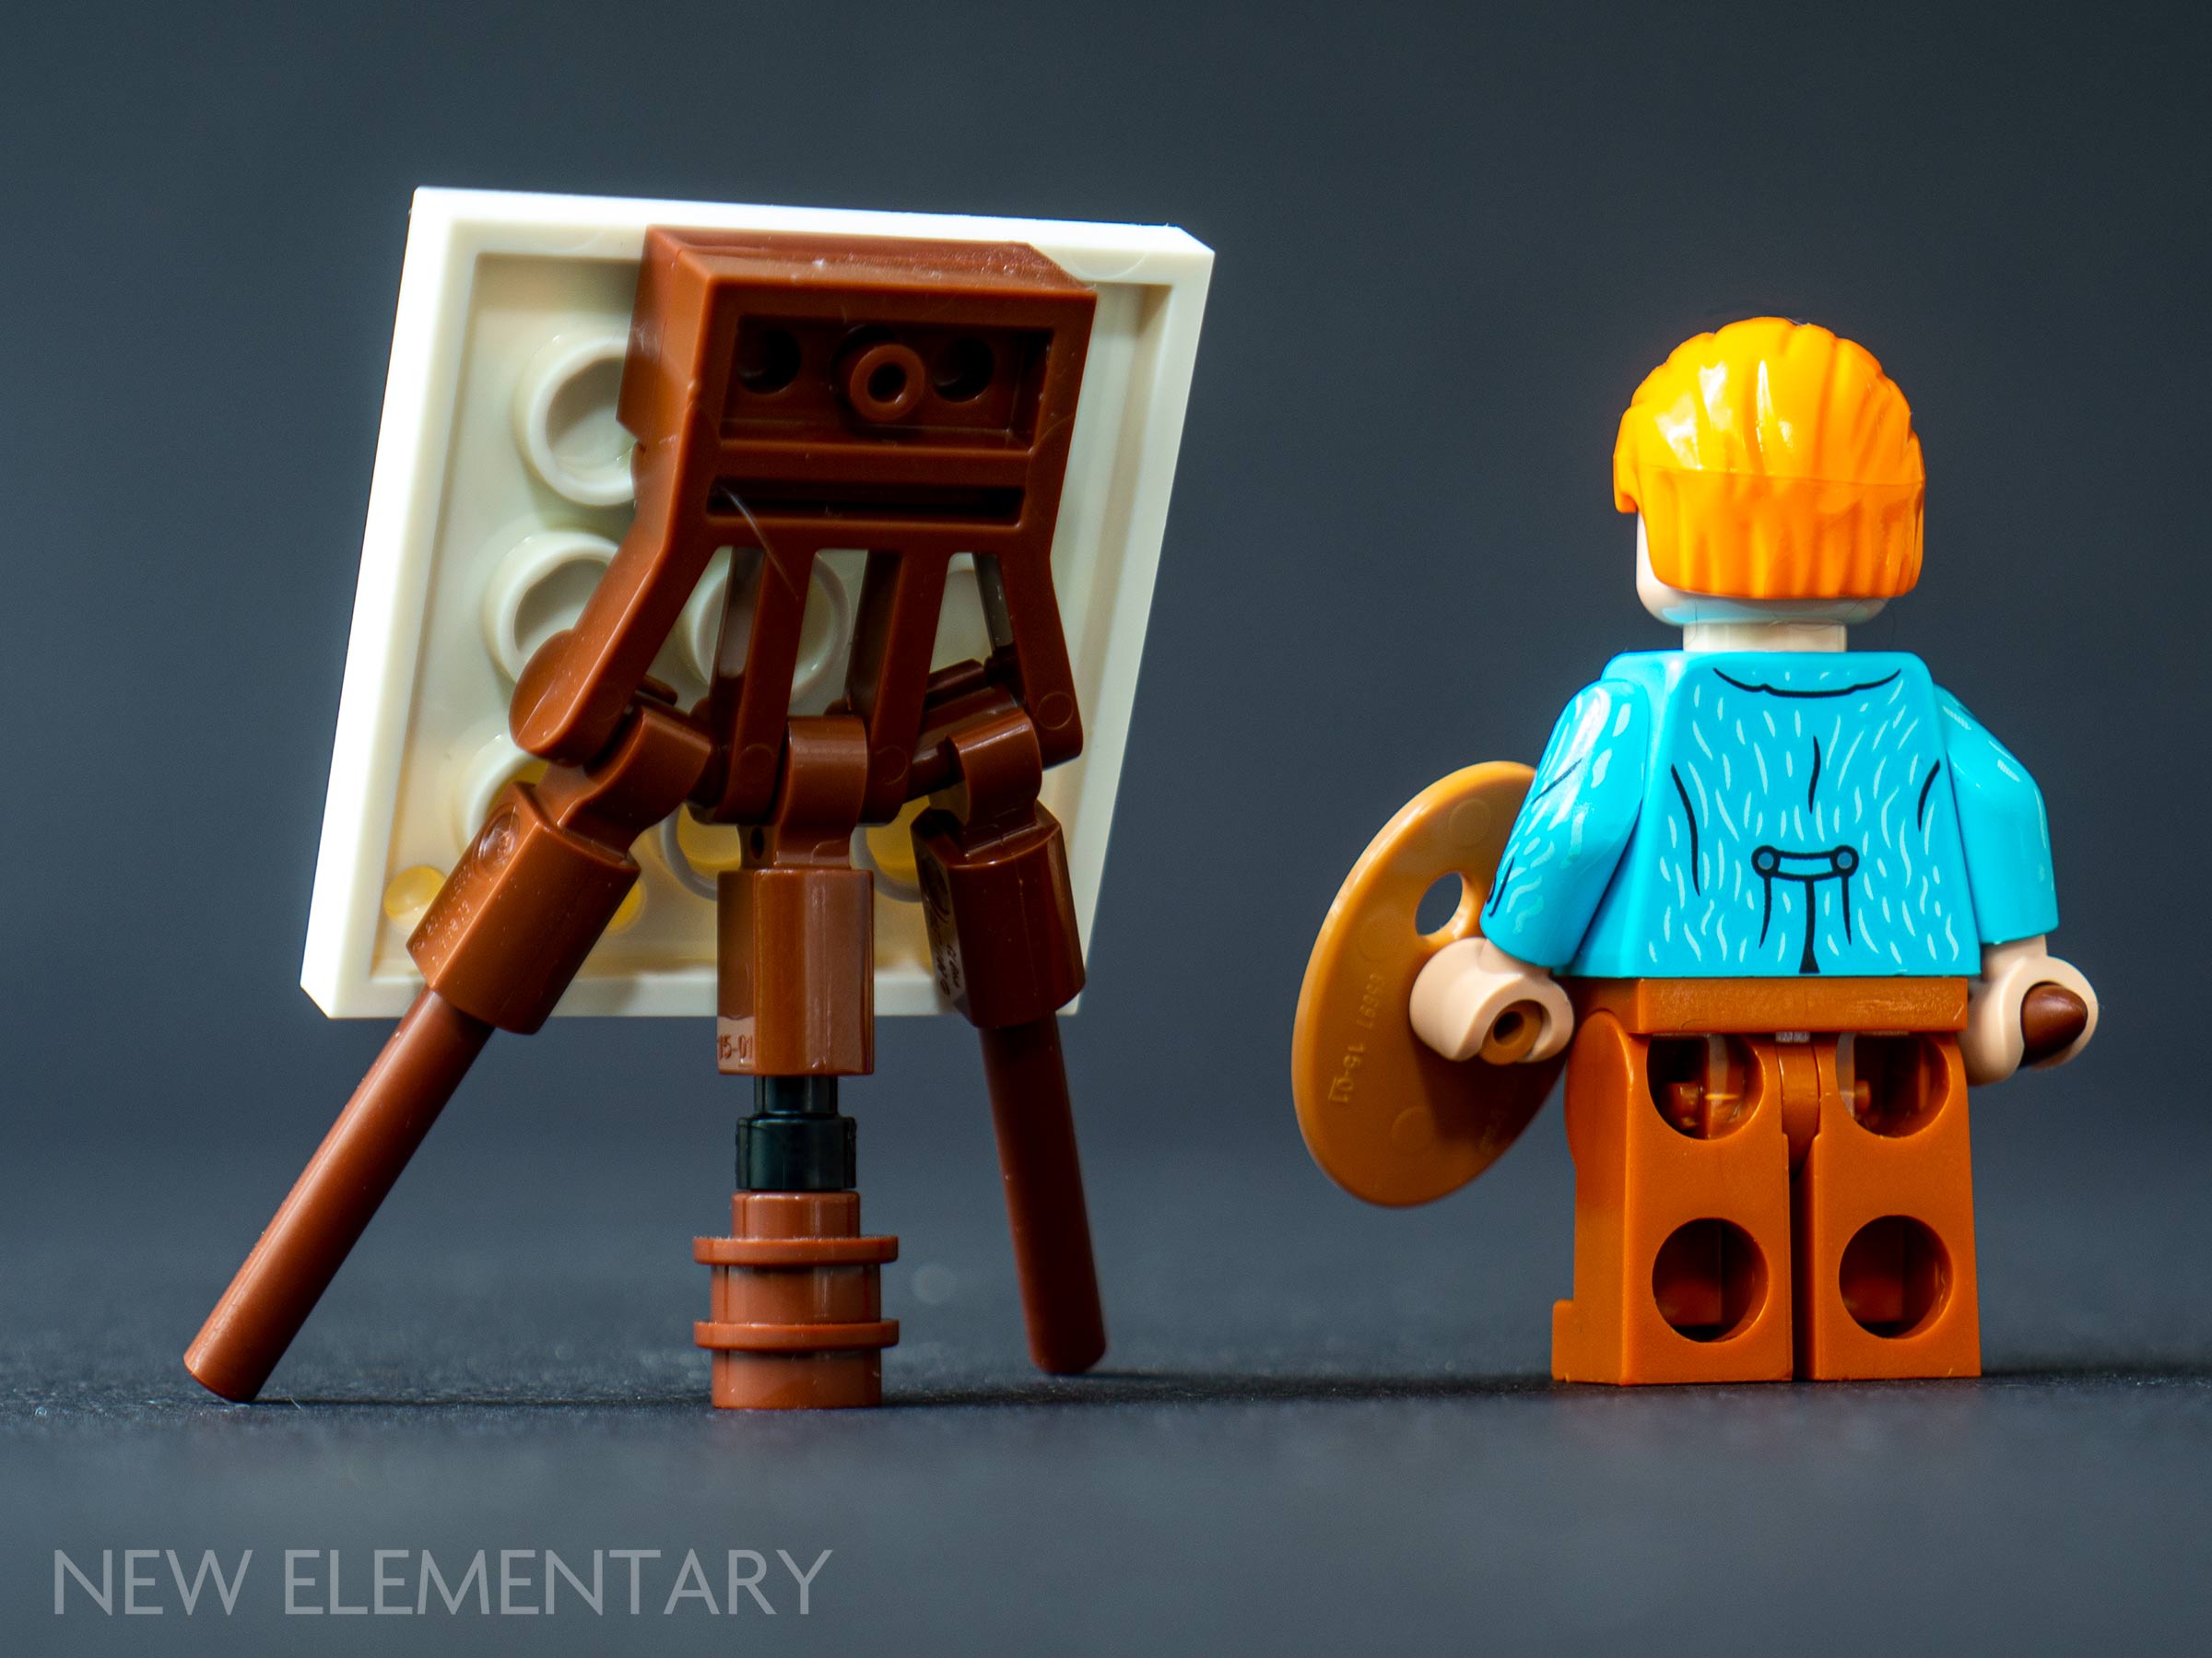 Lego - Self-Portrait by Vincent van Gogh